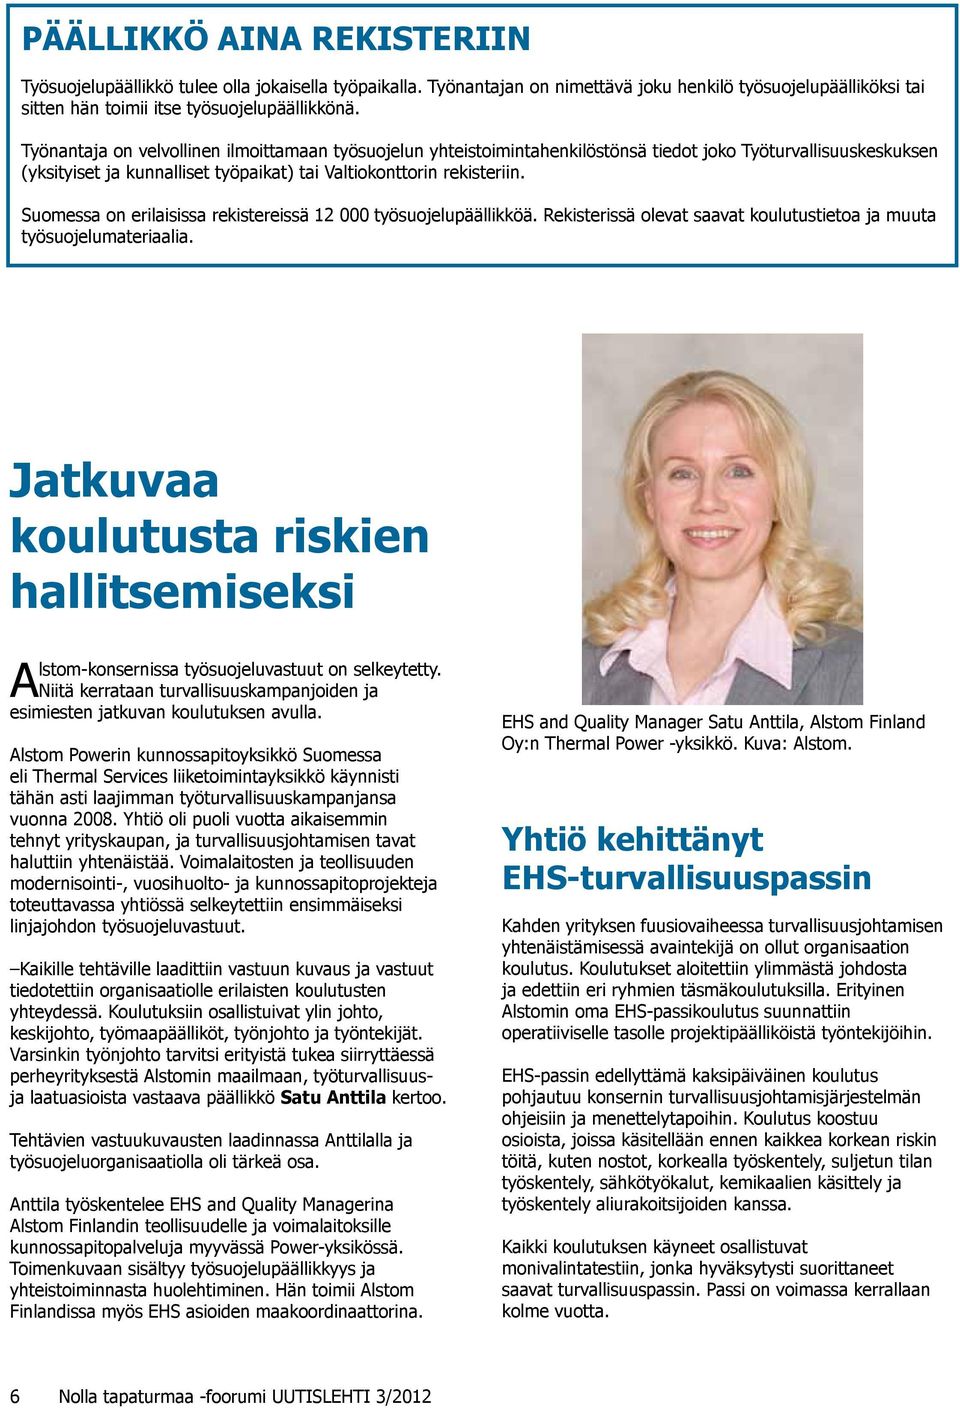 Suomessa on erilaisissa rekistereissä 12 000 työsuojelupäällikköä. Rekisterissä olevat saavat koulutustietoa ja muuta työsuojelumateriaalia.